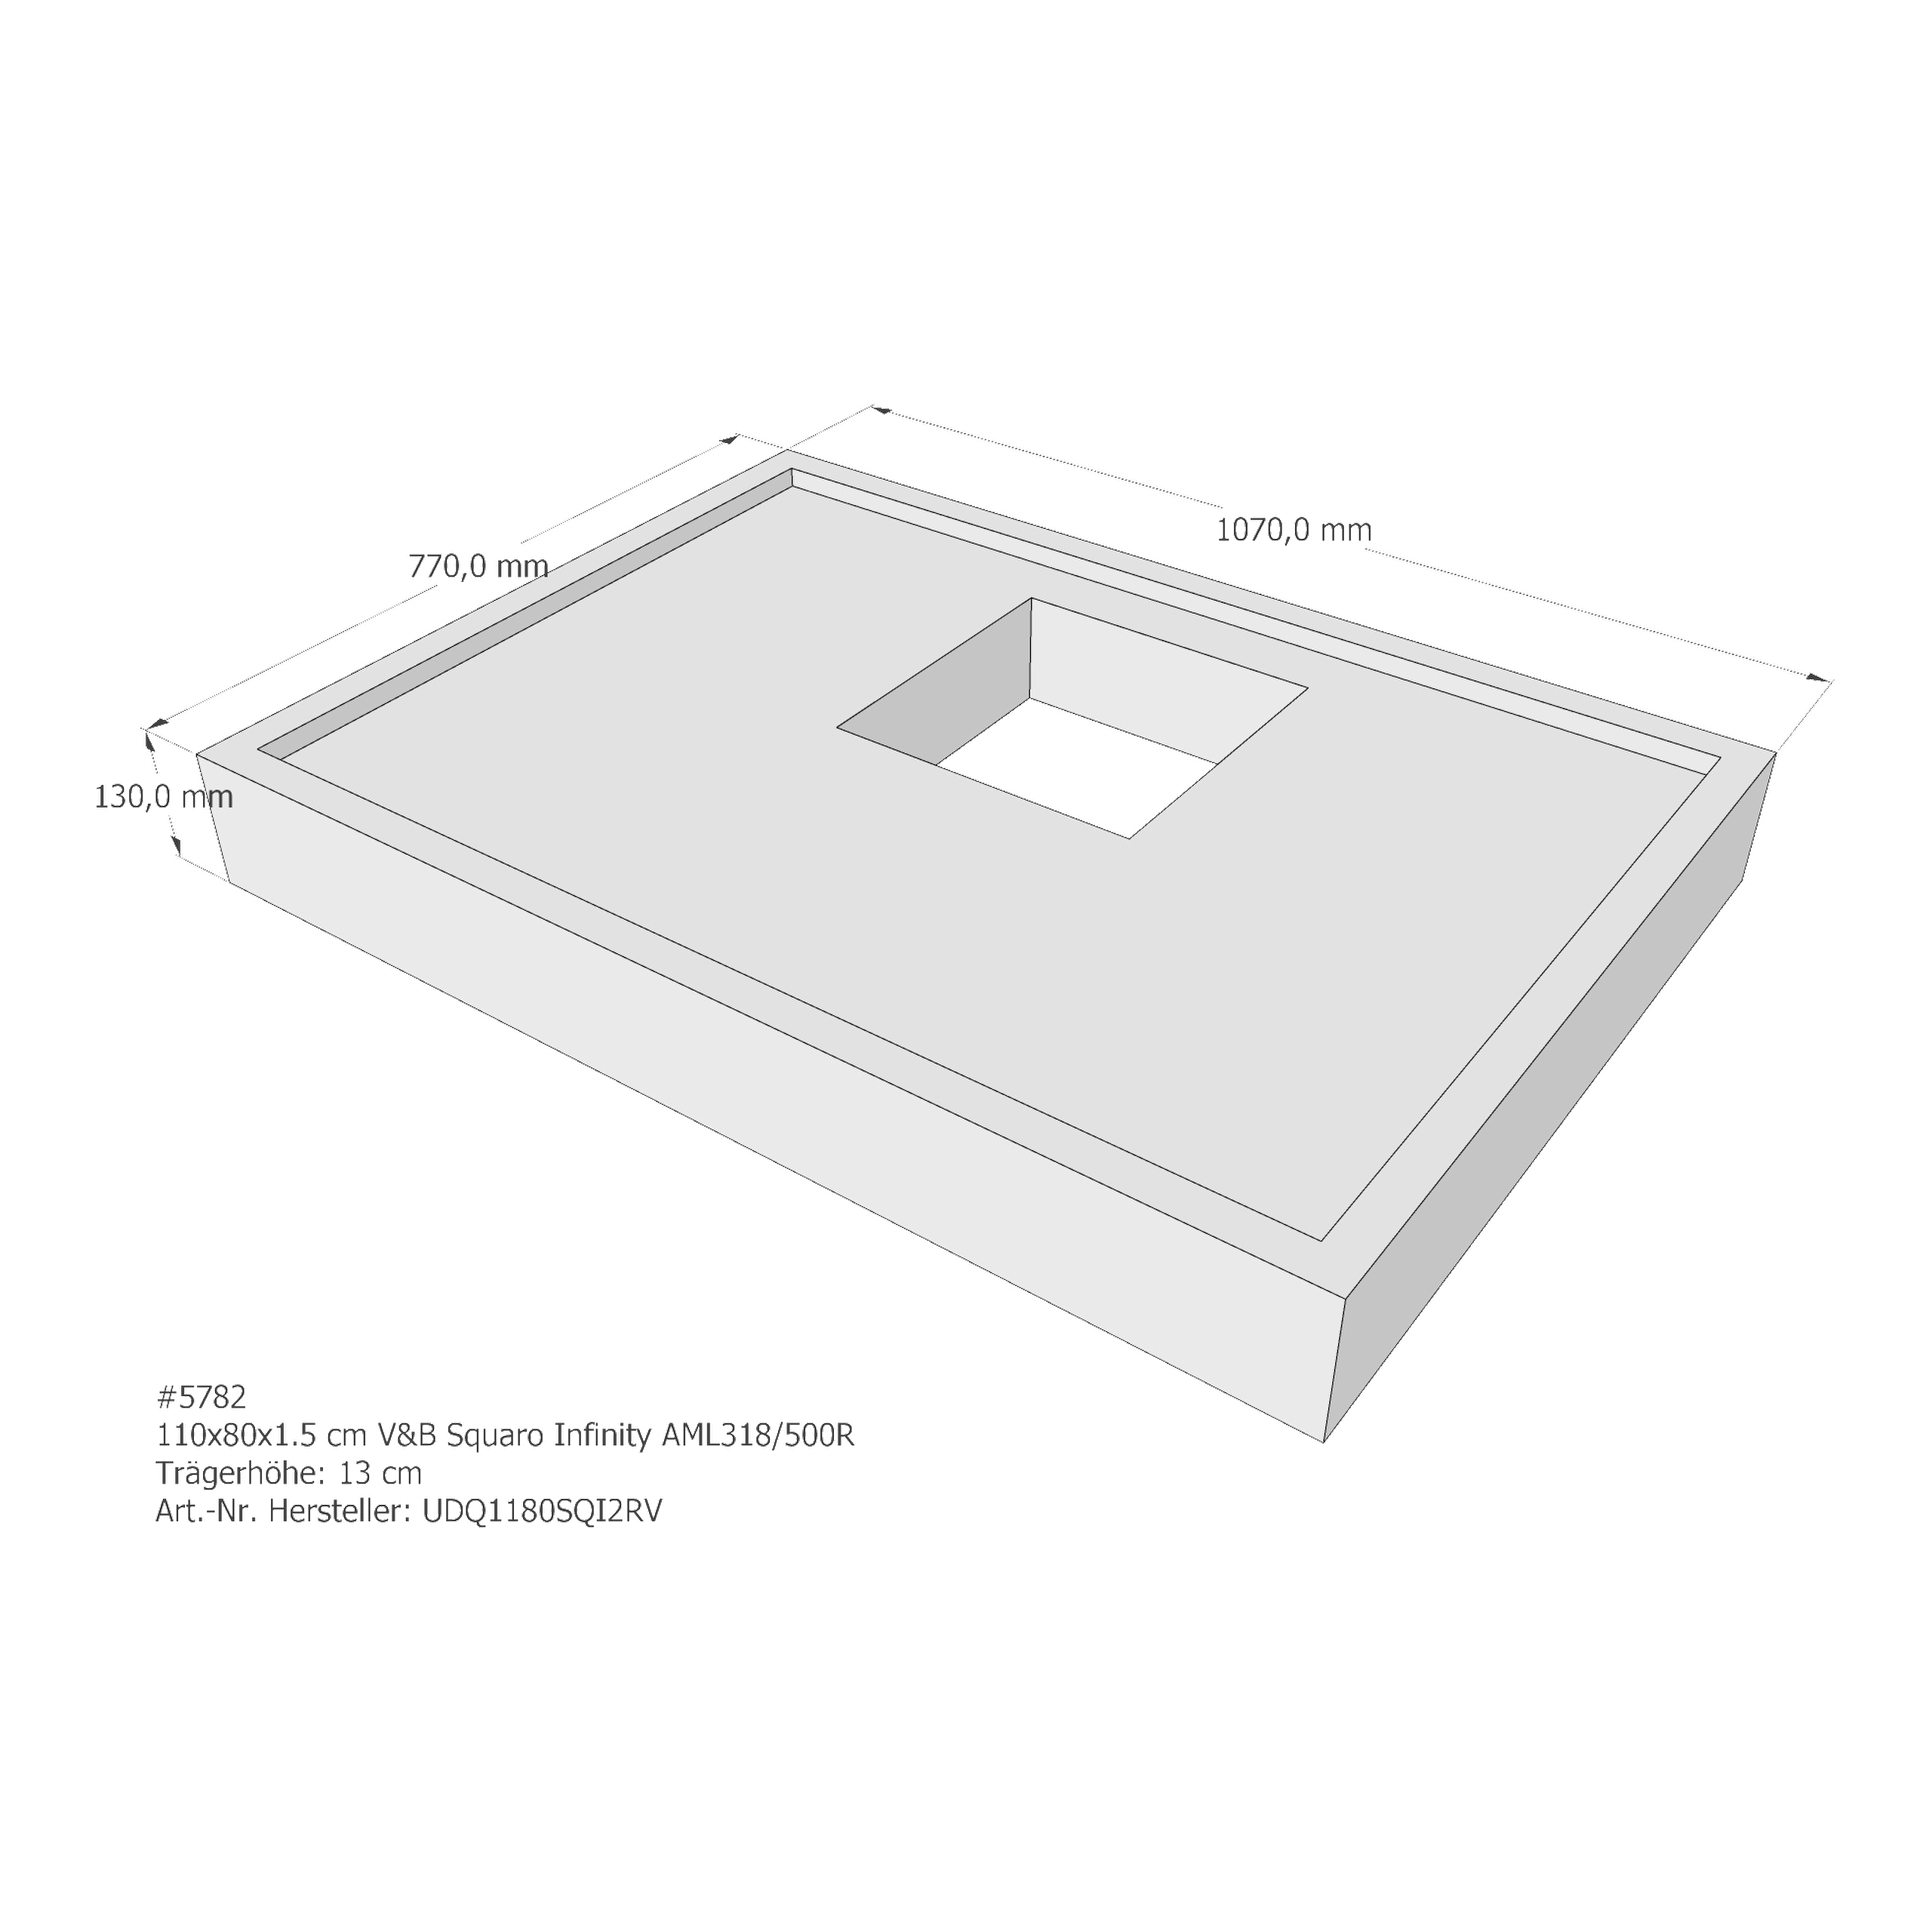 Duschwannenträger für Villeroy & Boch Squaro Infinity 110 × 80 × 1,5 cm